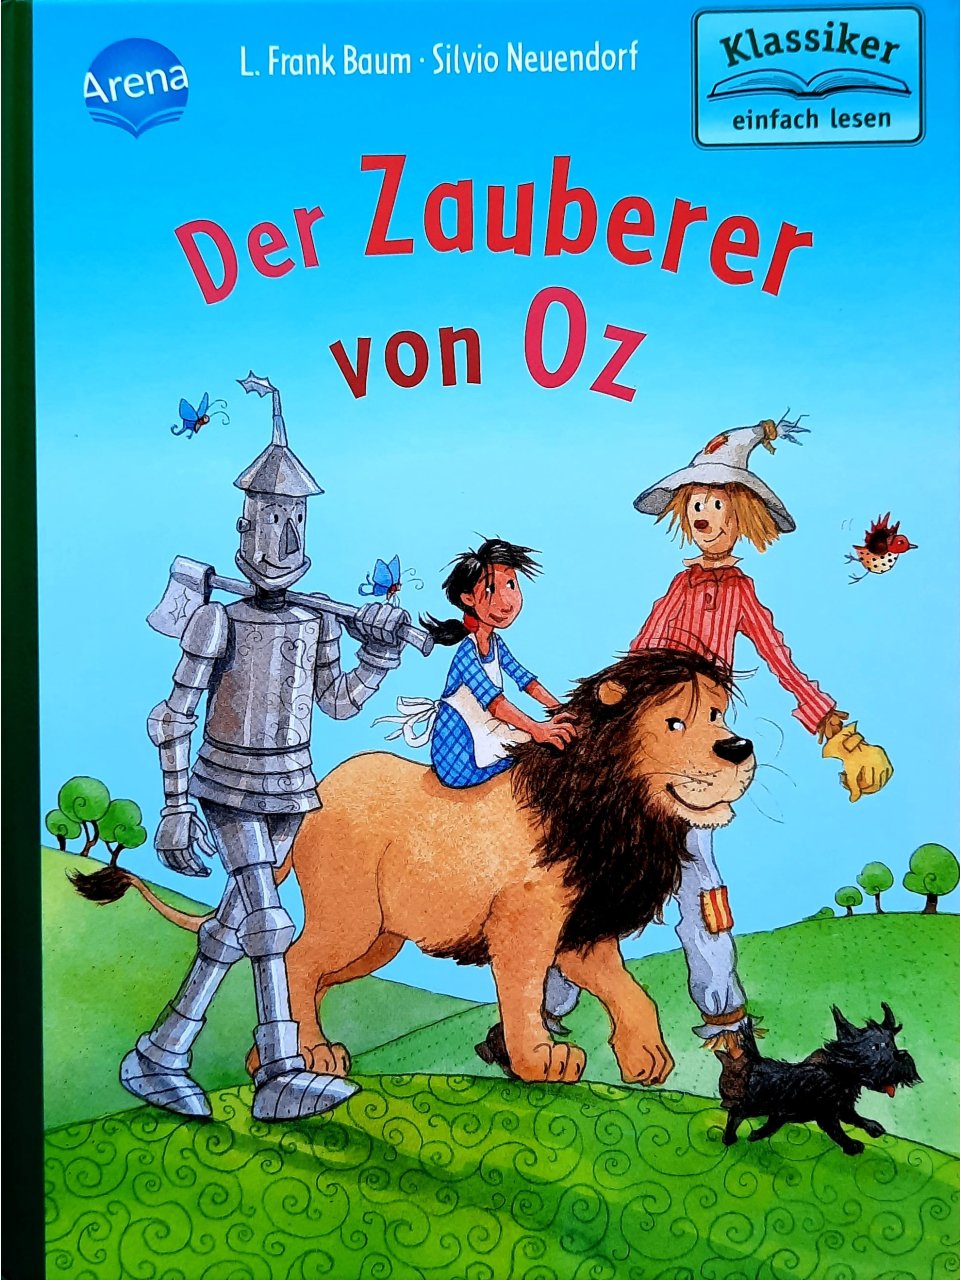 Der Zauberer von Oz (Klassiker einfach lesen)